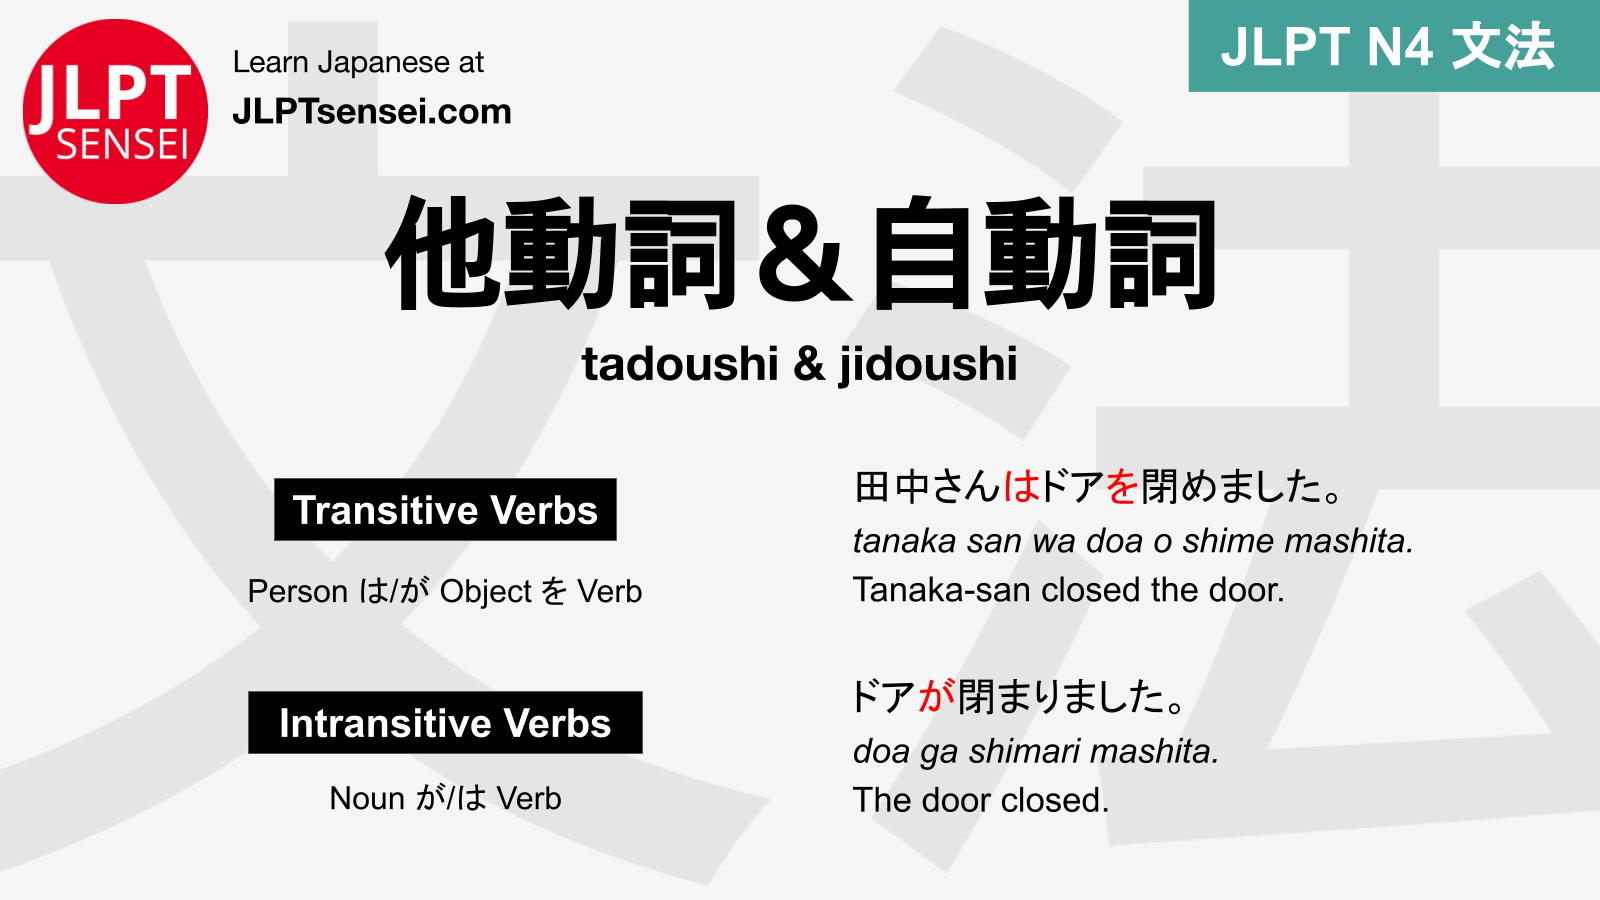 jidoushi-tadoushi-intransitive-transitive-verbs